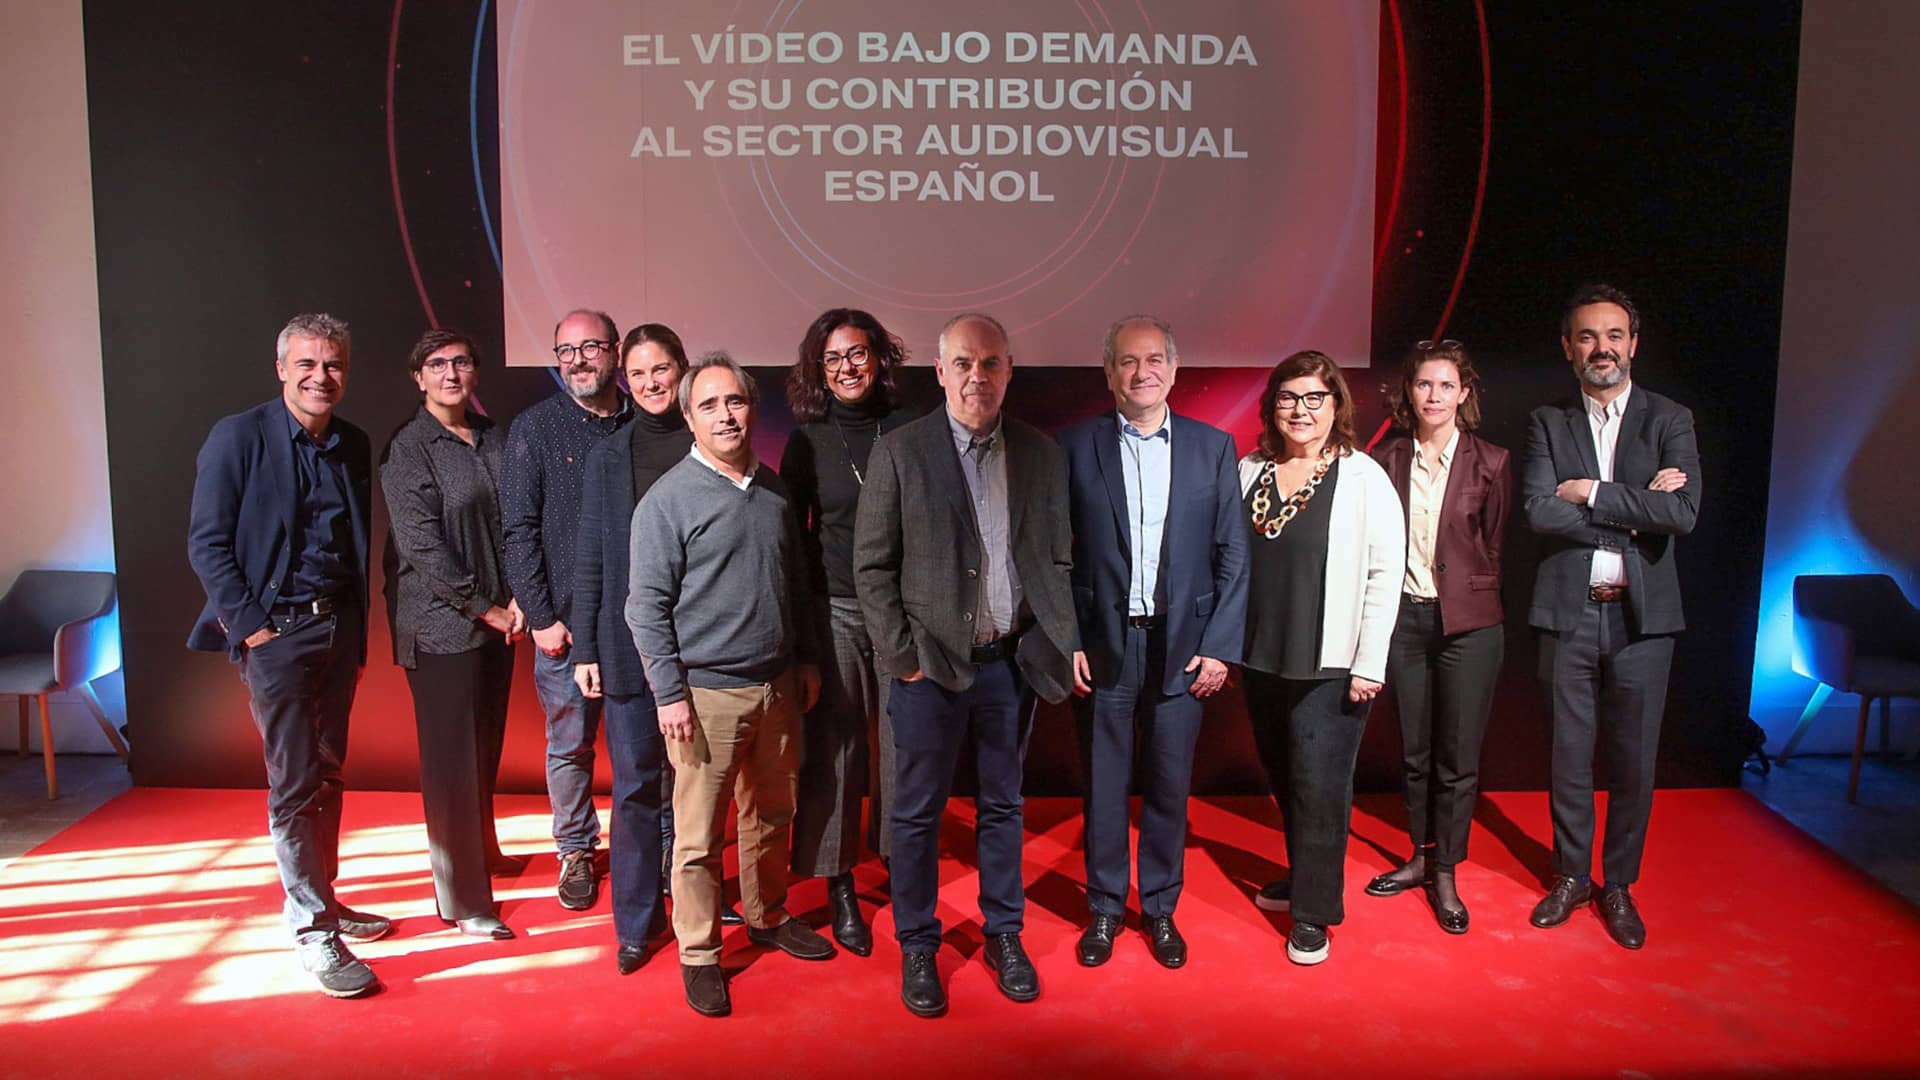 Los servicios de vídeo bajo demanda se consolidan como motor para situar el audiovisual español como referente internacional